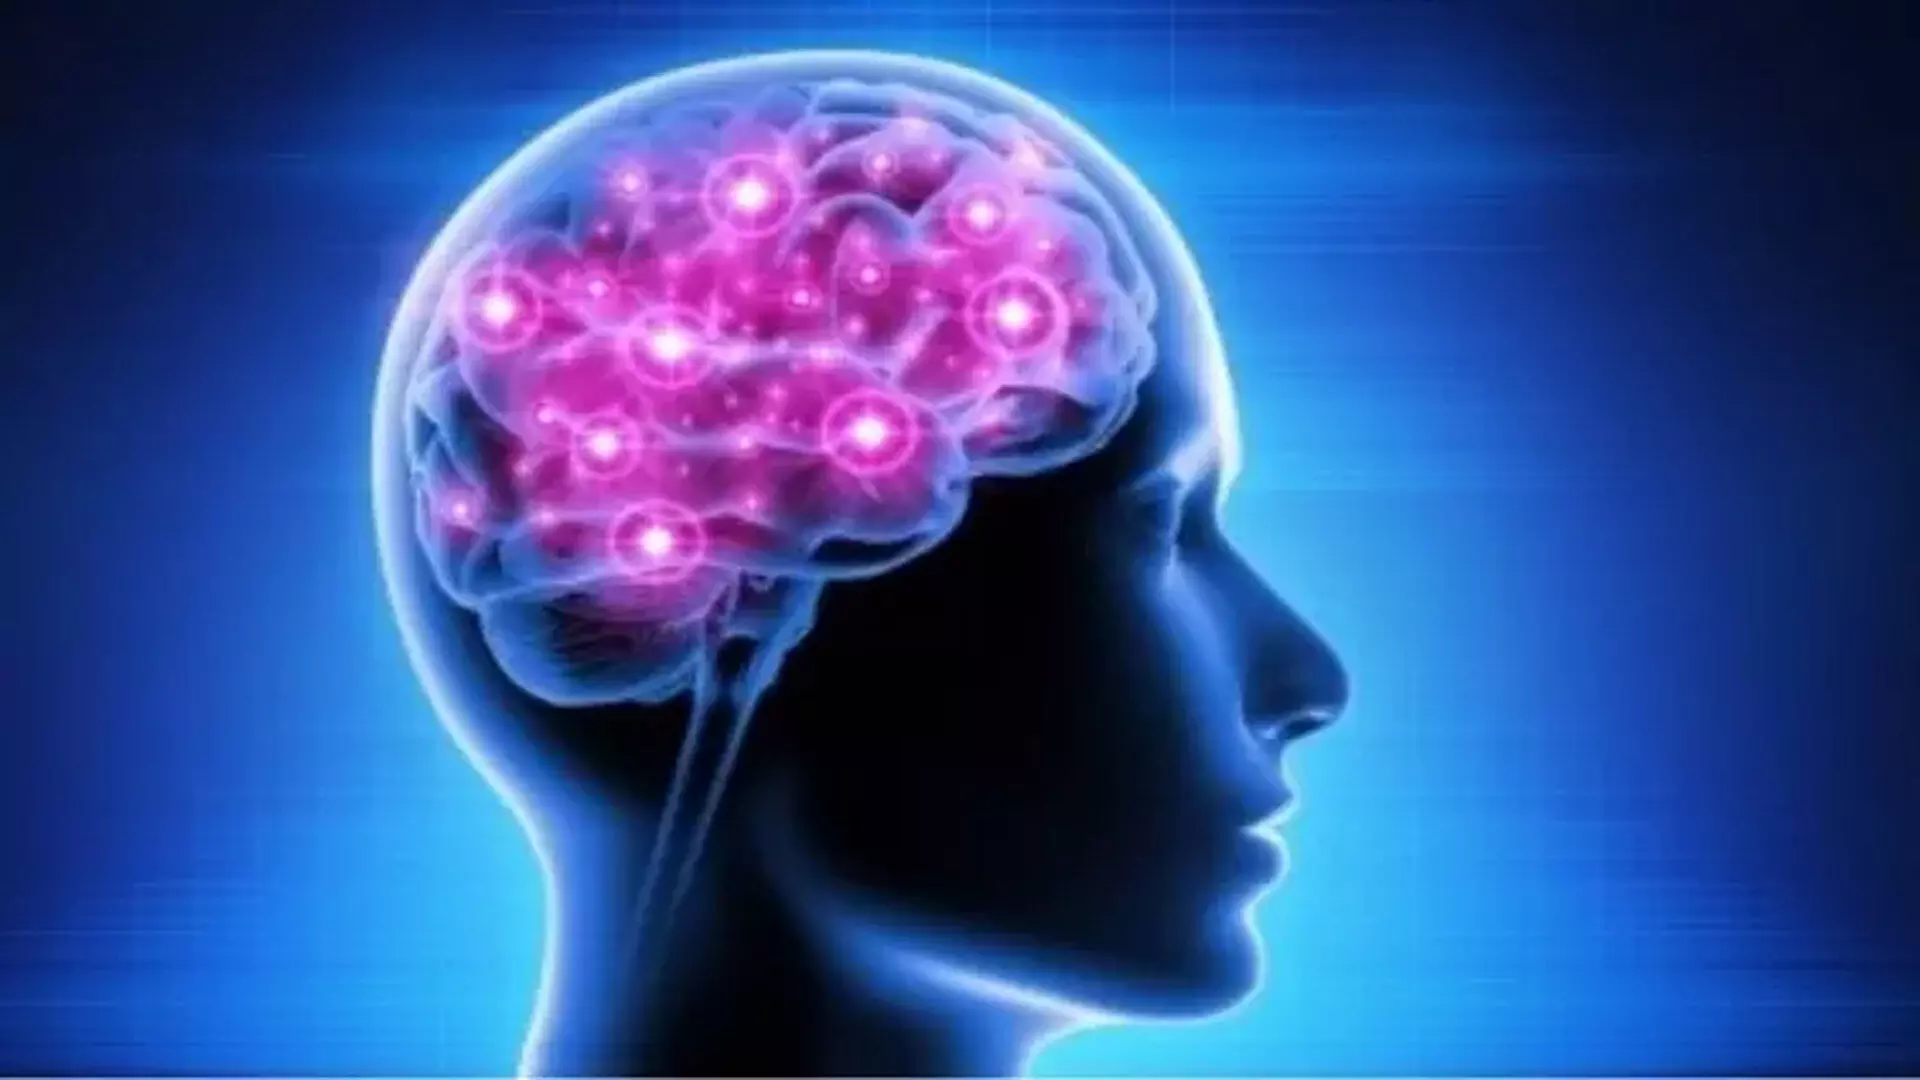 Healthy जीवनशैली बढ़ती मस्तिष्क आघात और बीमारियों से निपटने के लिए महत्वपूर्ण- विशेषज्ञ